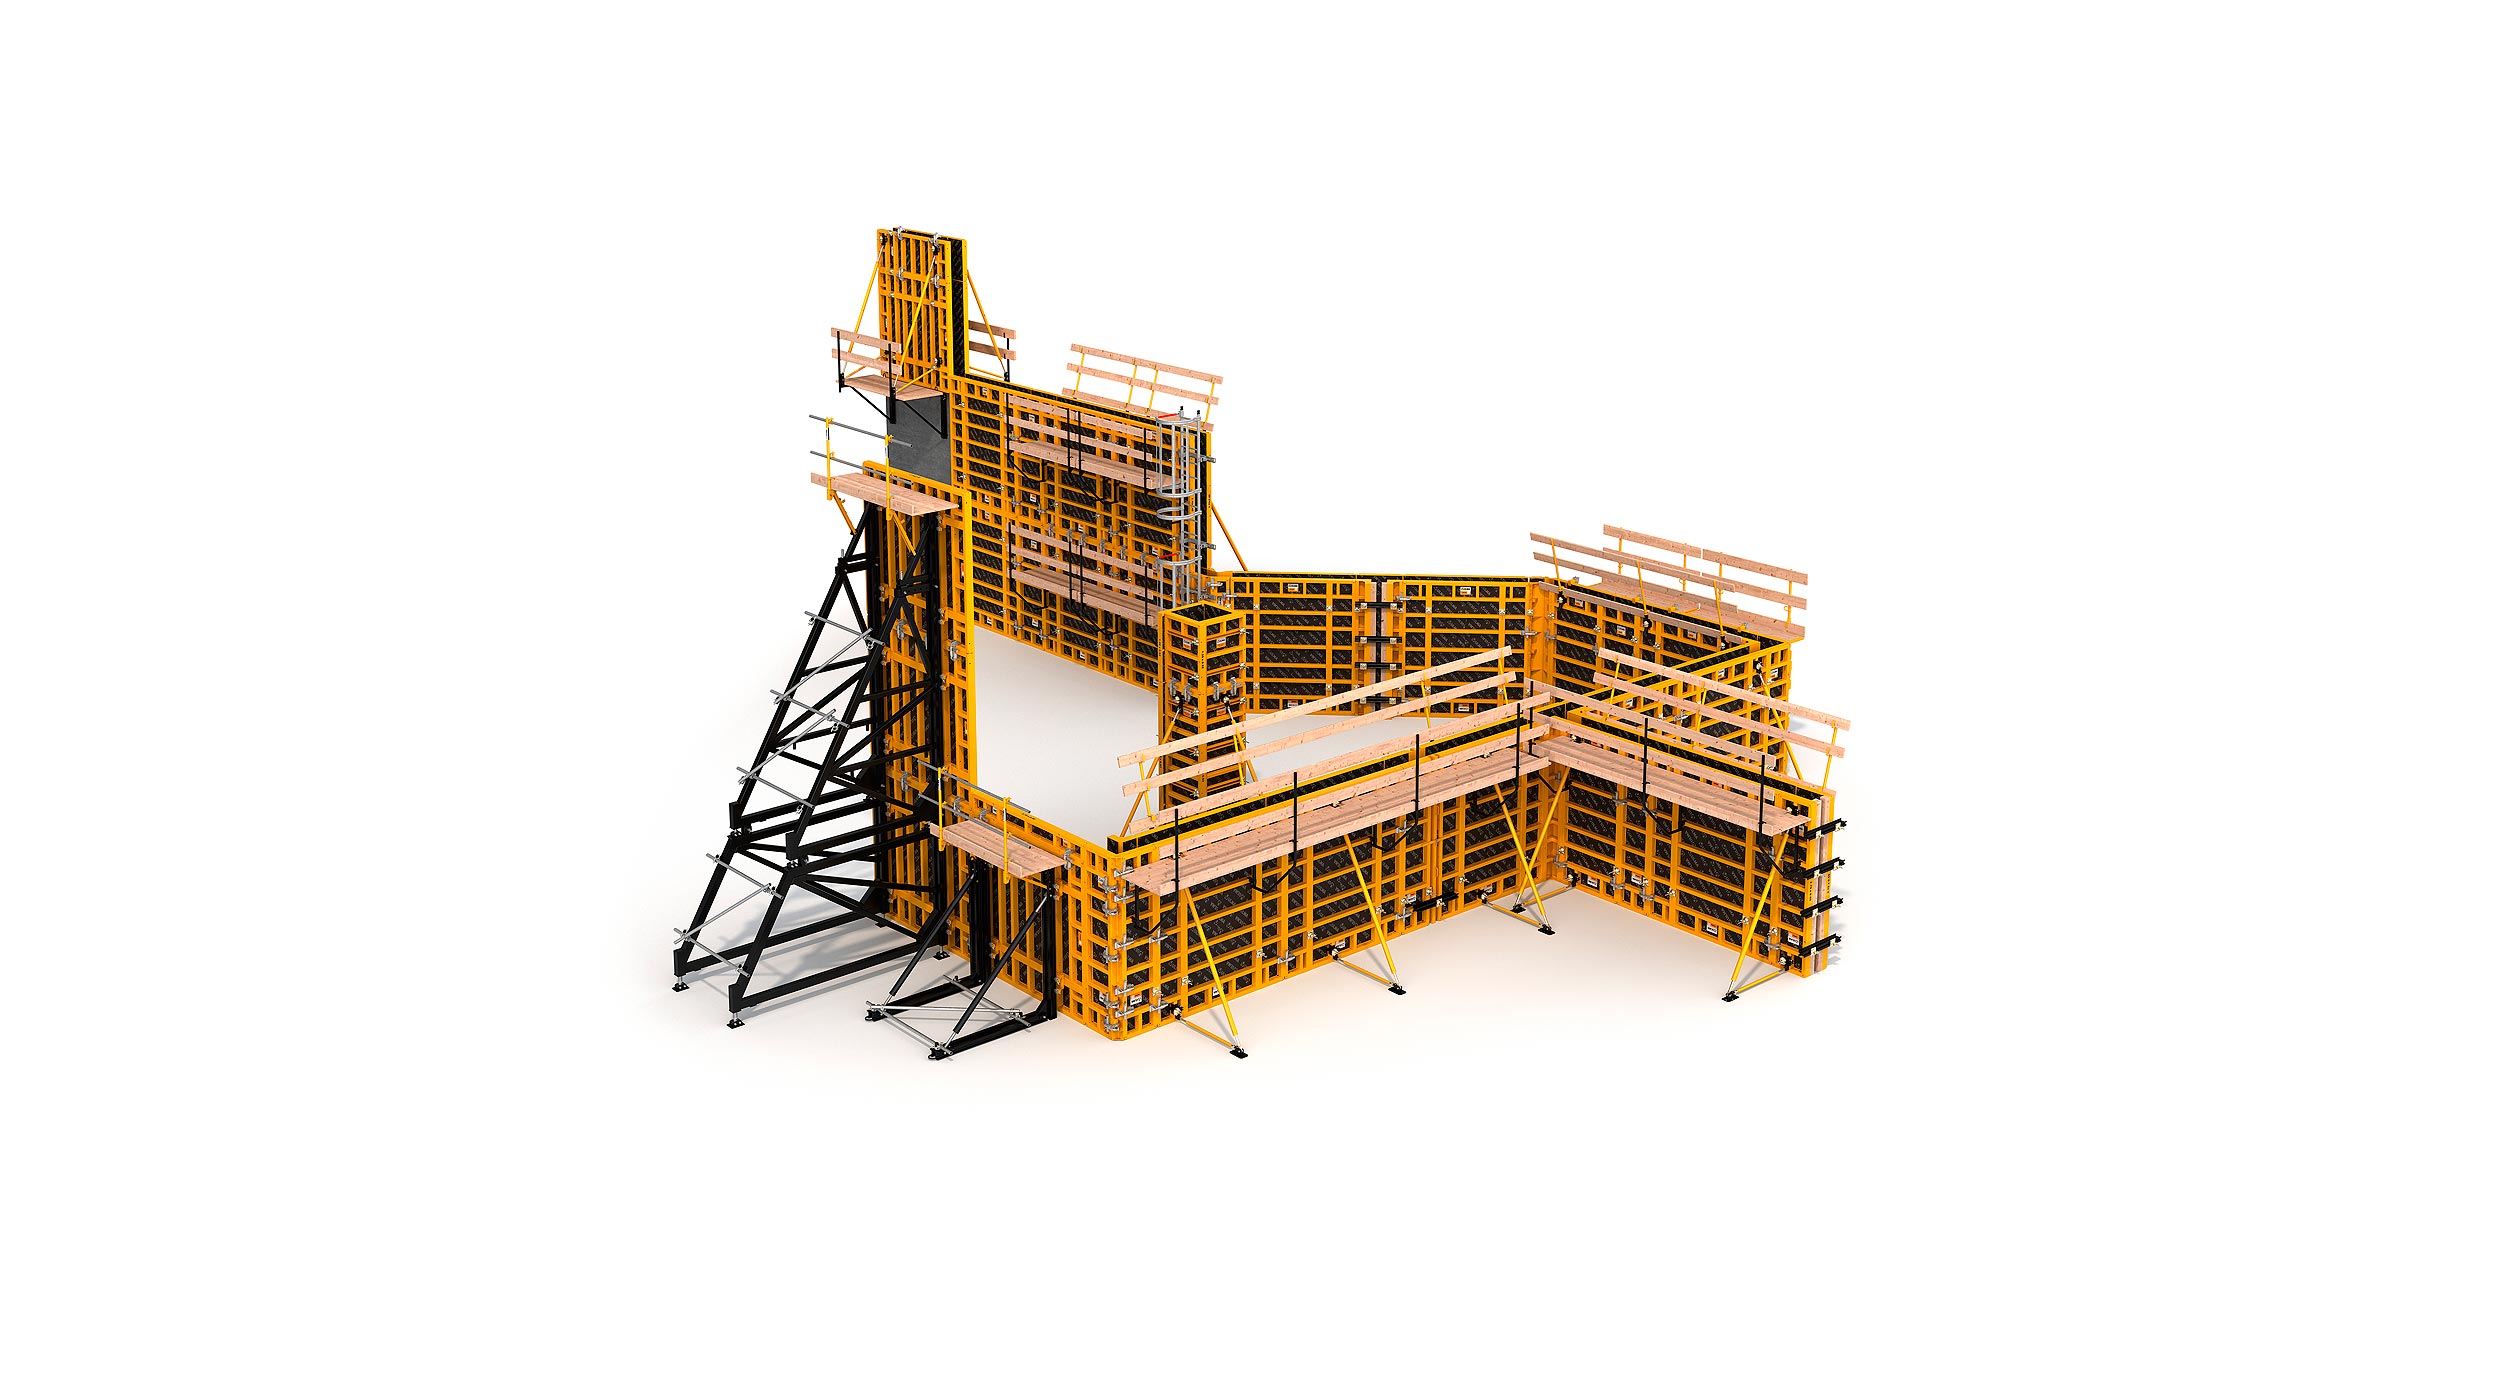 Sistema de moldaje modular para la construcción de todo tipo de estructuras verticales de hormigón. Destaca su alto rendimiento con el  mínimo coste en mano de obra.